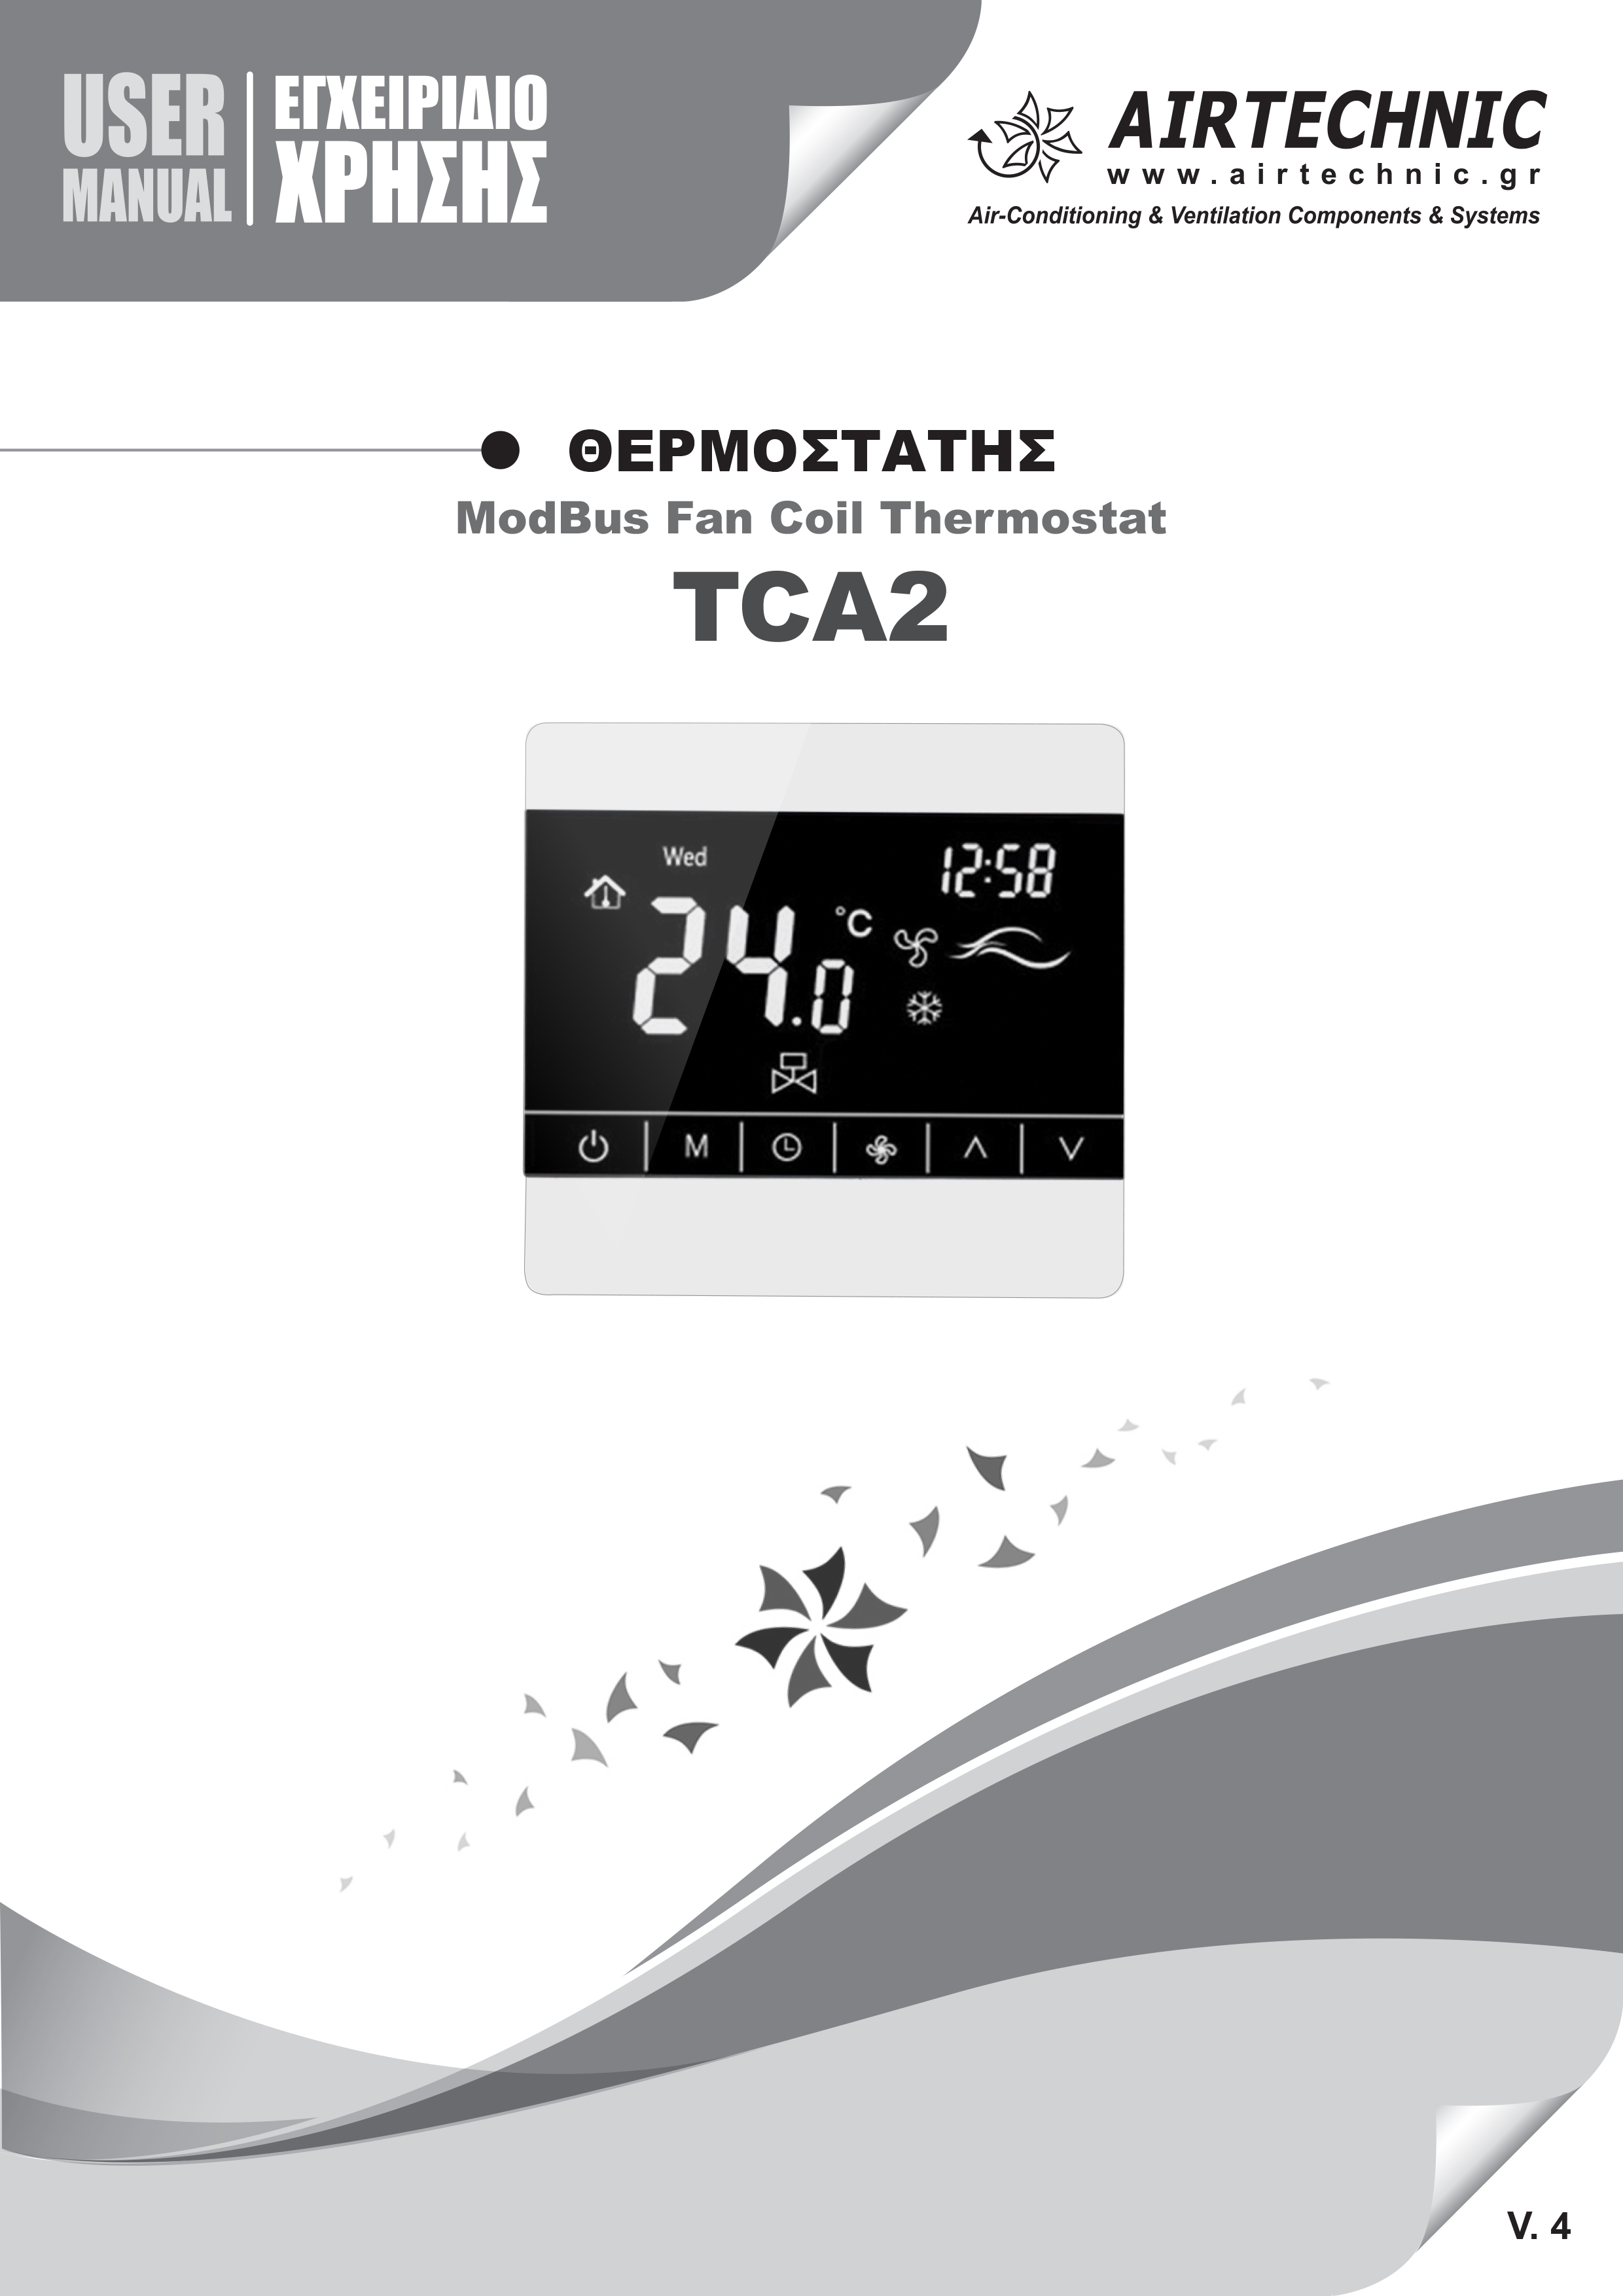 USER's MANUAL "ΘΕΡΜΟΣΤΑΤΗΣ TCA2"